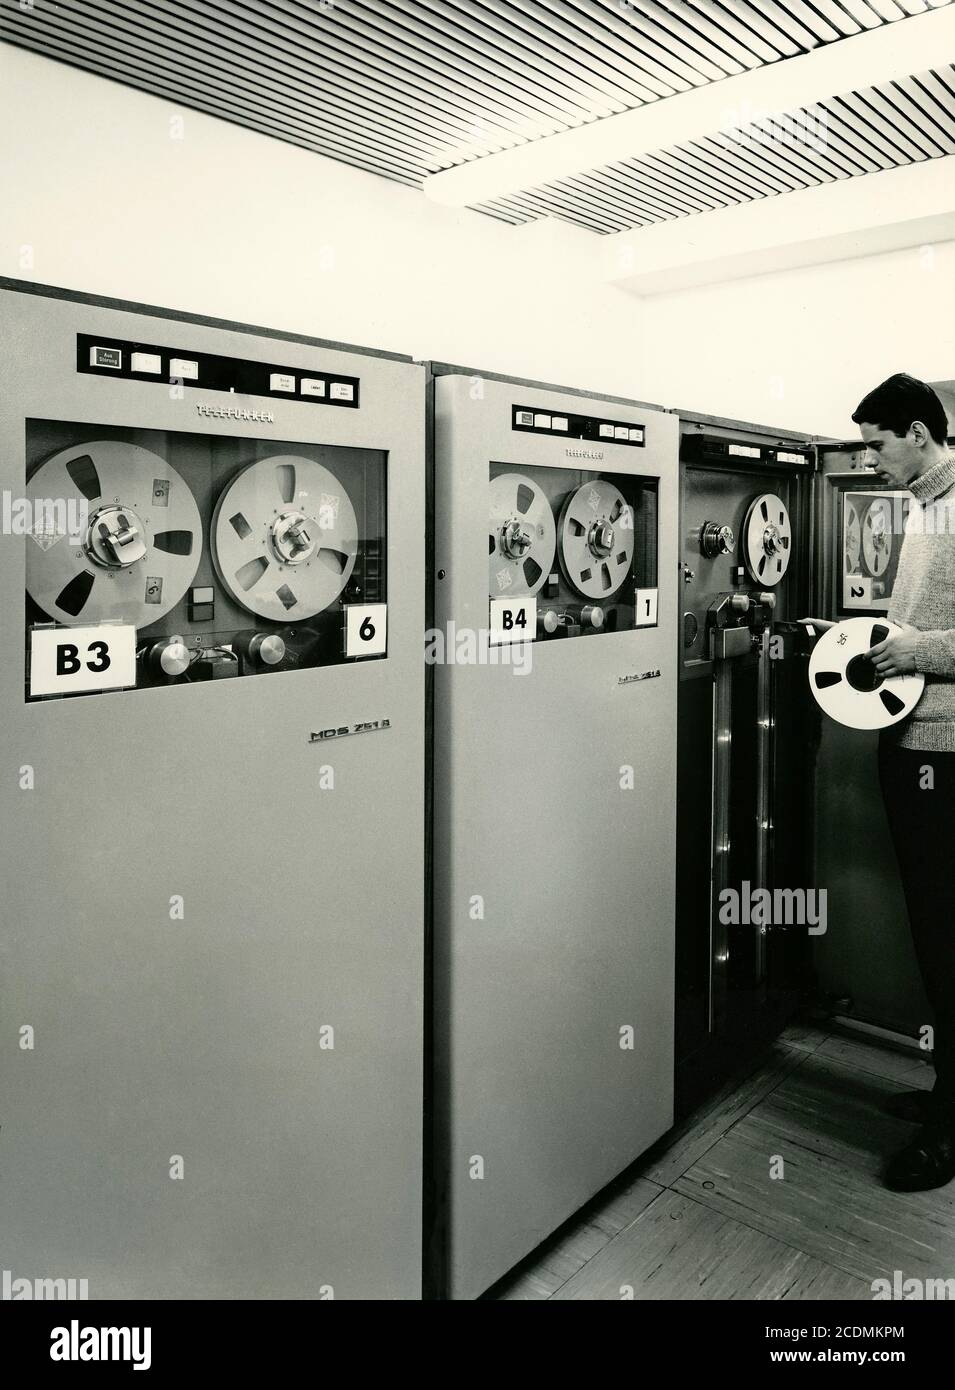 Bandspeichergerät, Bandlaufwerk, IBM 360 Mainframe-Computer, Technische  Hochschule (heute Technische Universität), historische Aufnahme um 1966  Stockfotografie - Alamy